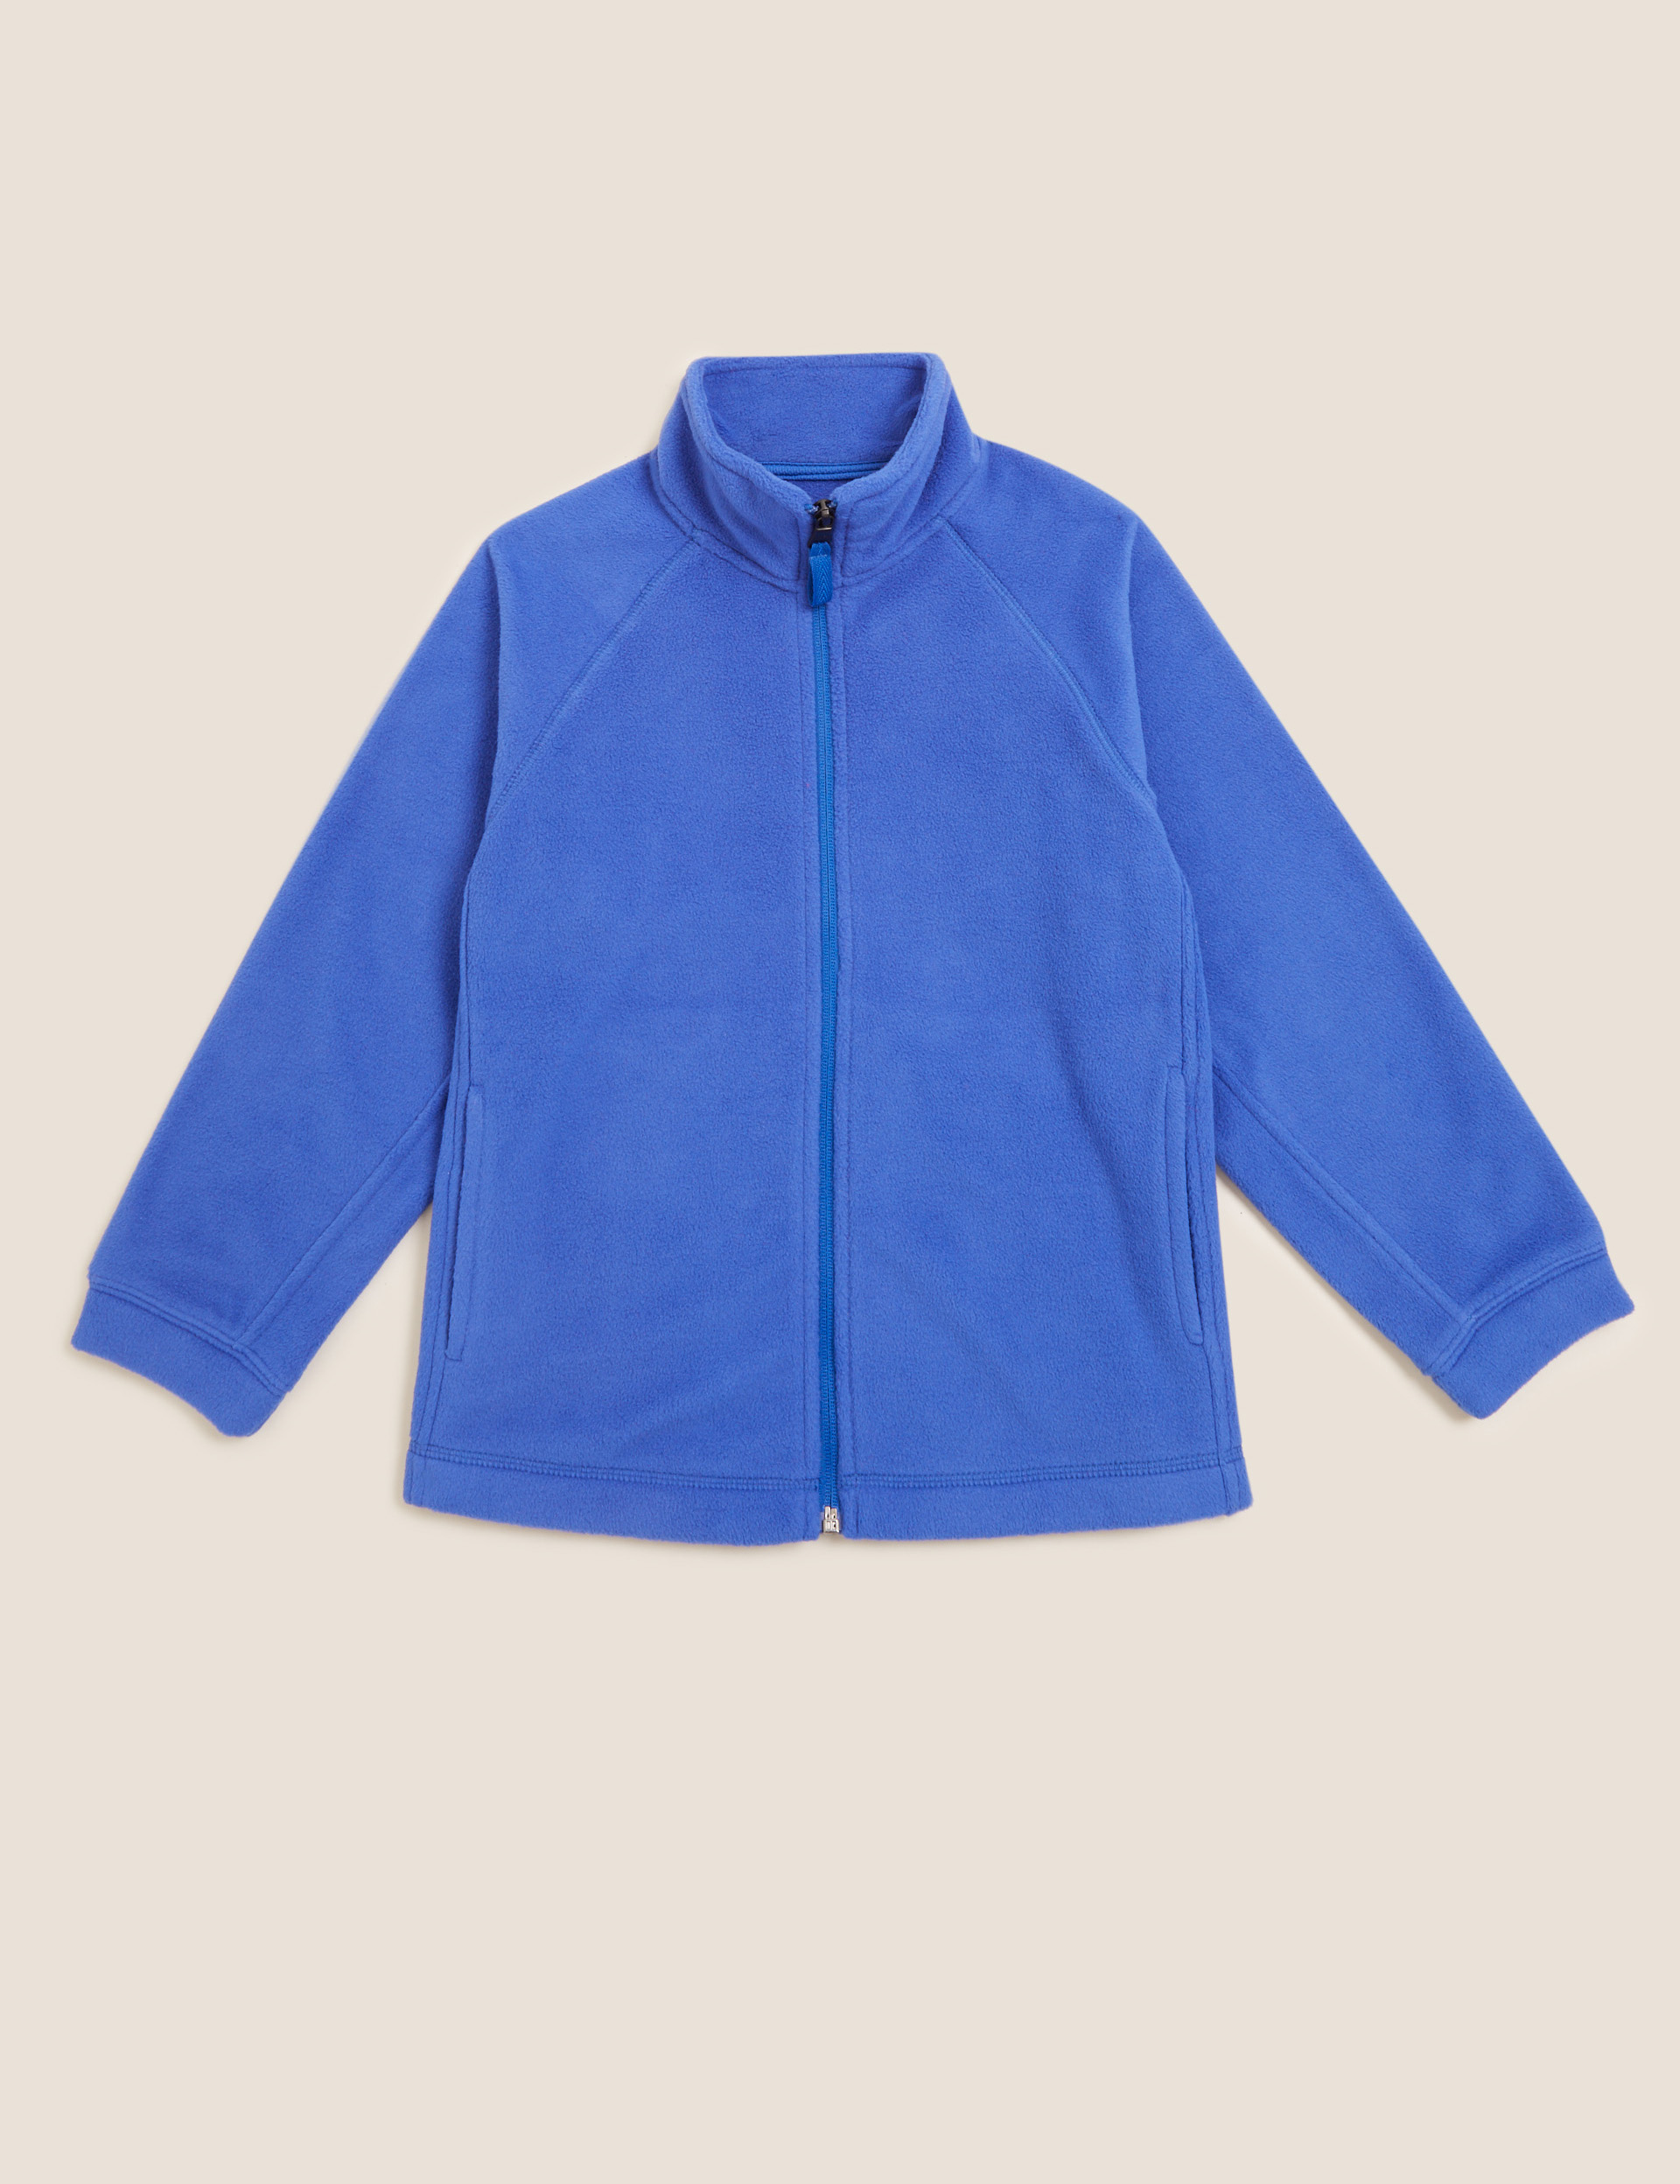 Plain Unisex Royal Blue Fleece Jacket